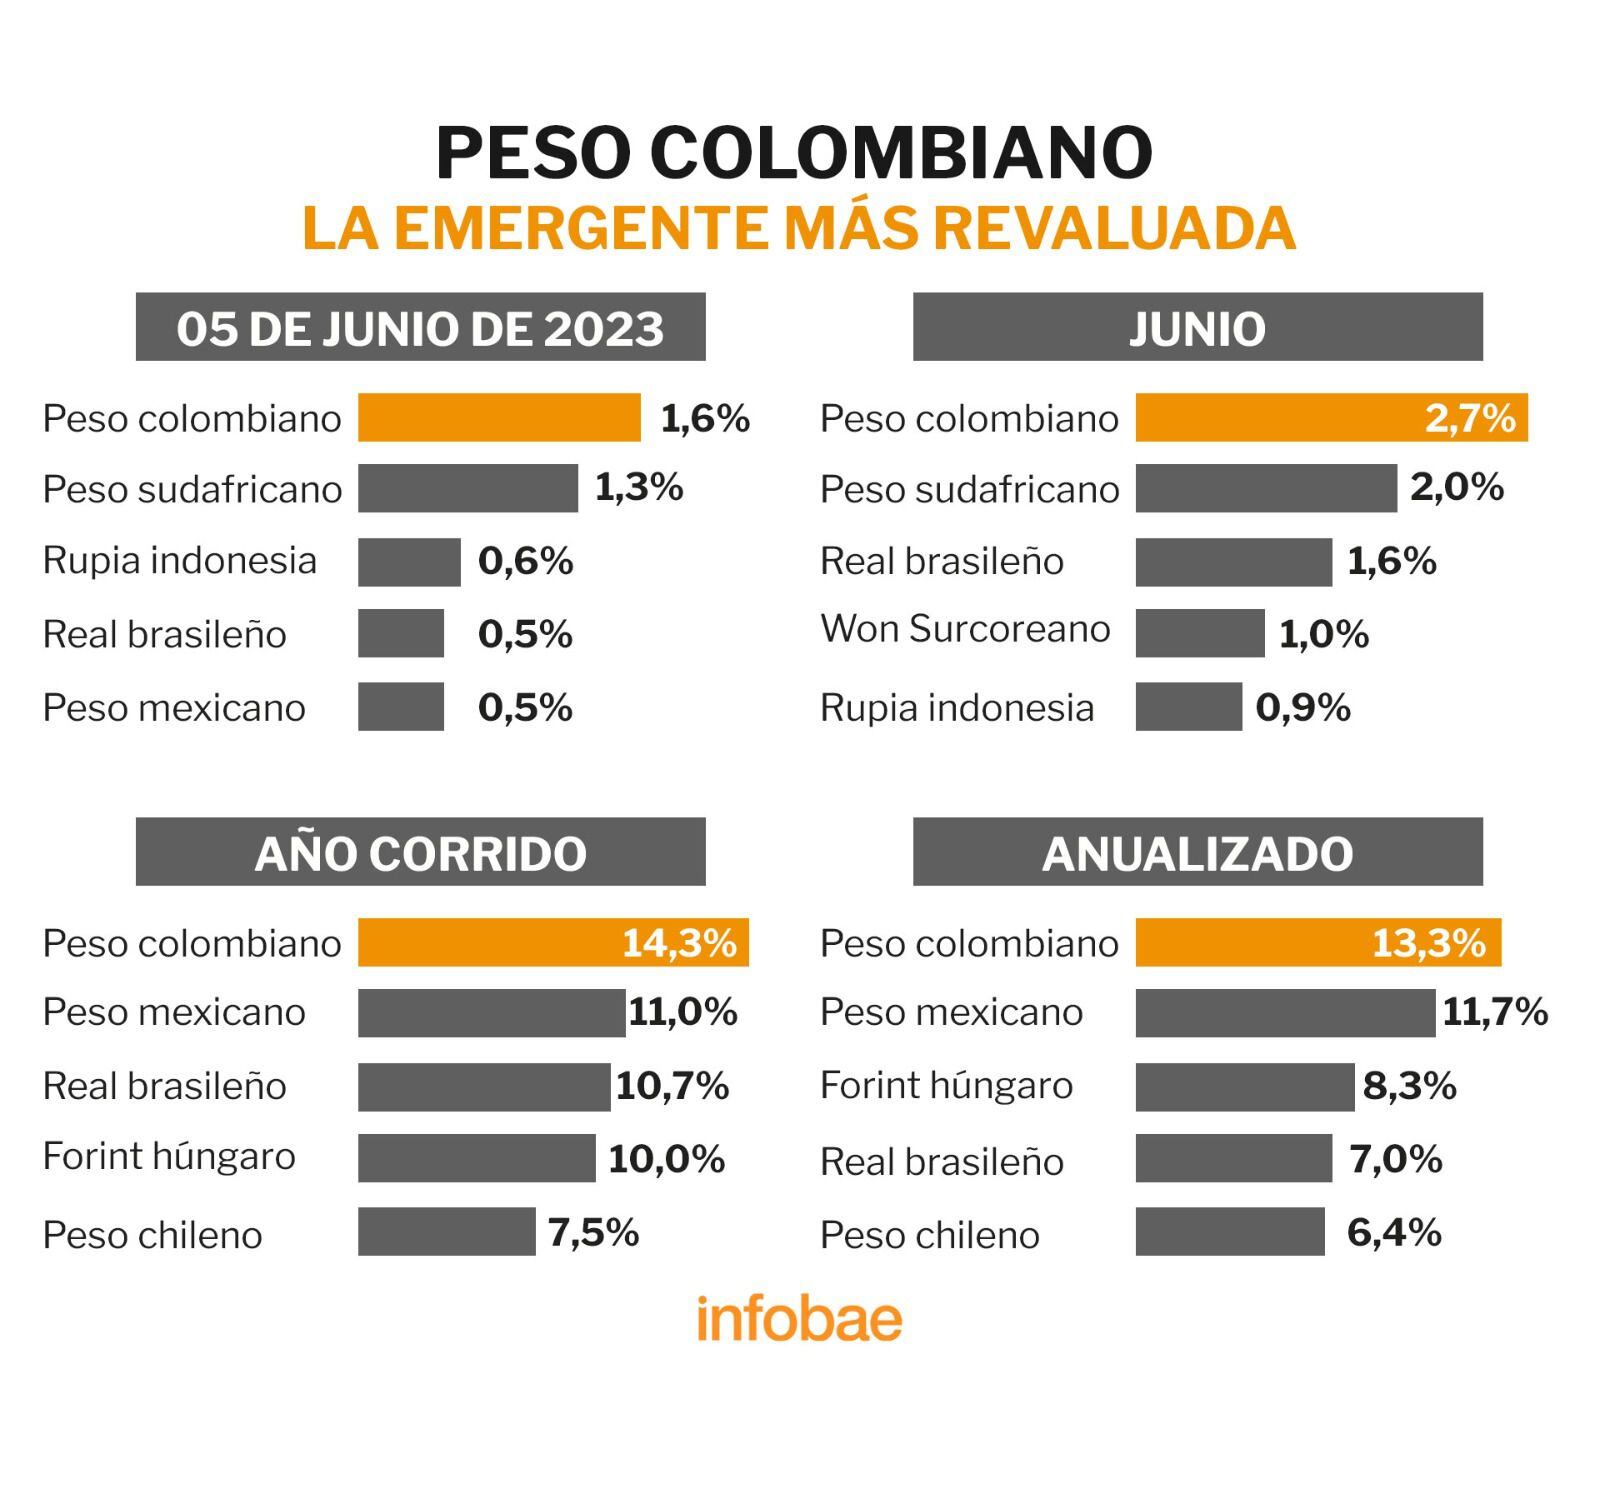 El peso colombiano es la moneda emergente más revaluada. Infobae.